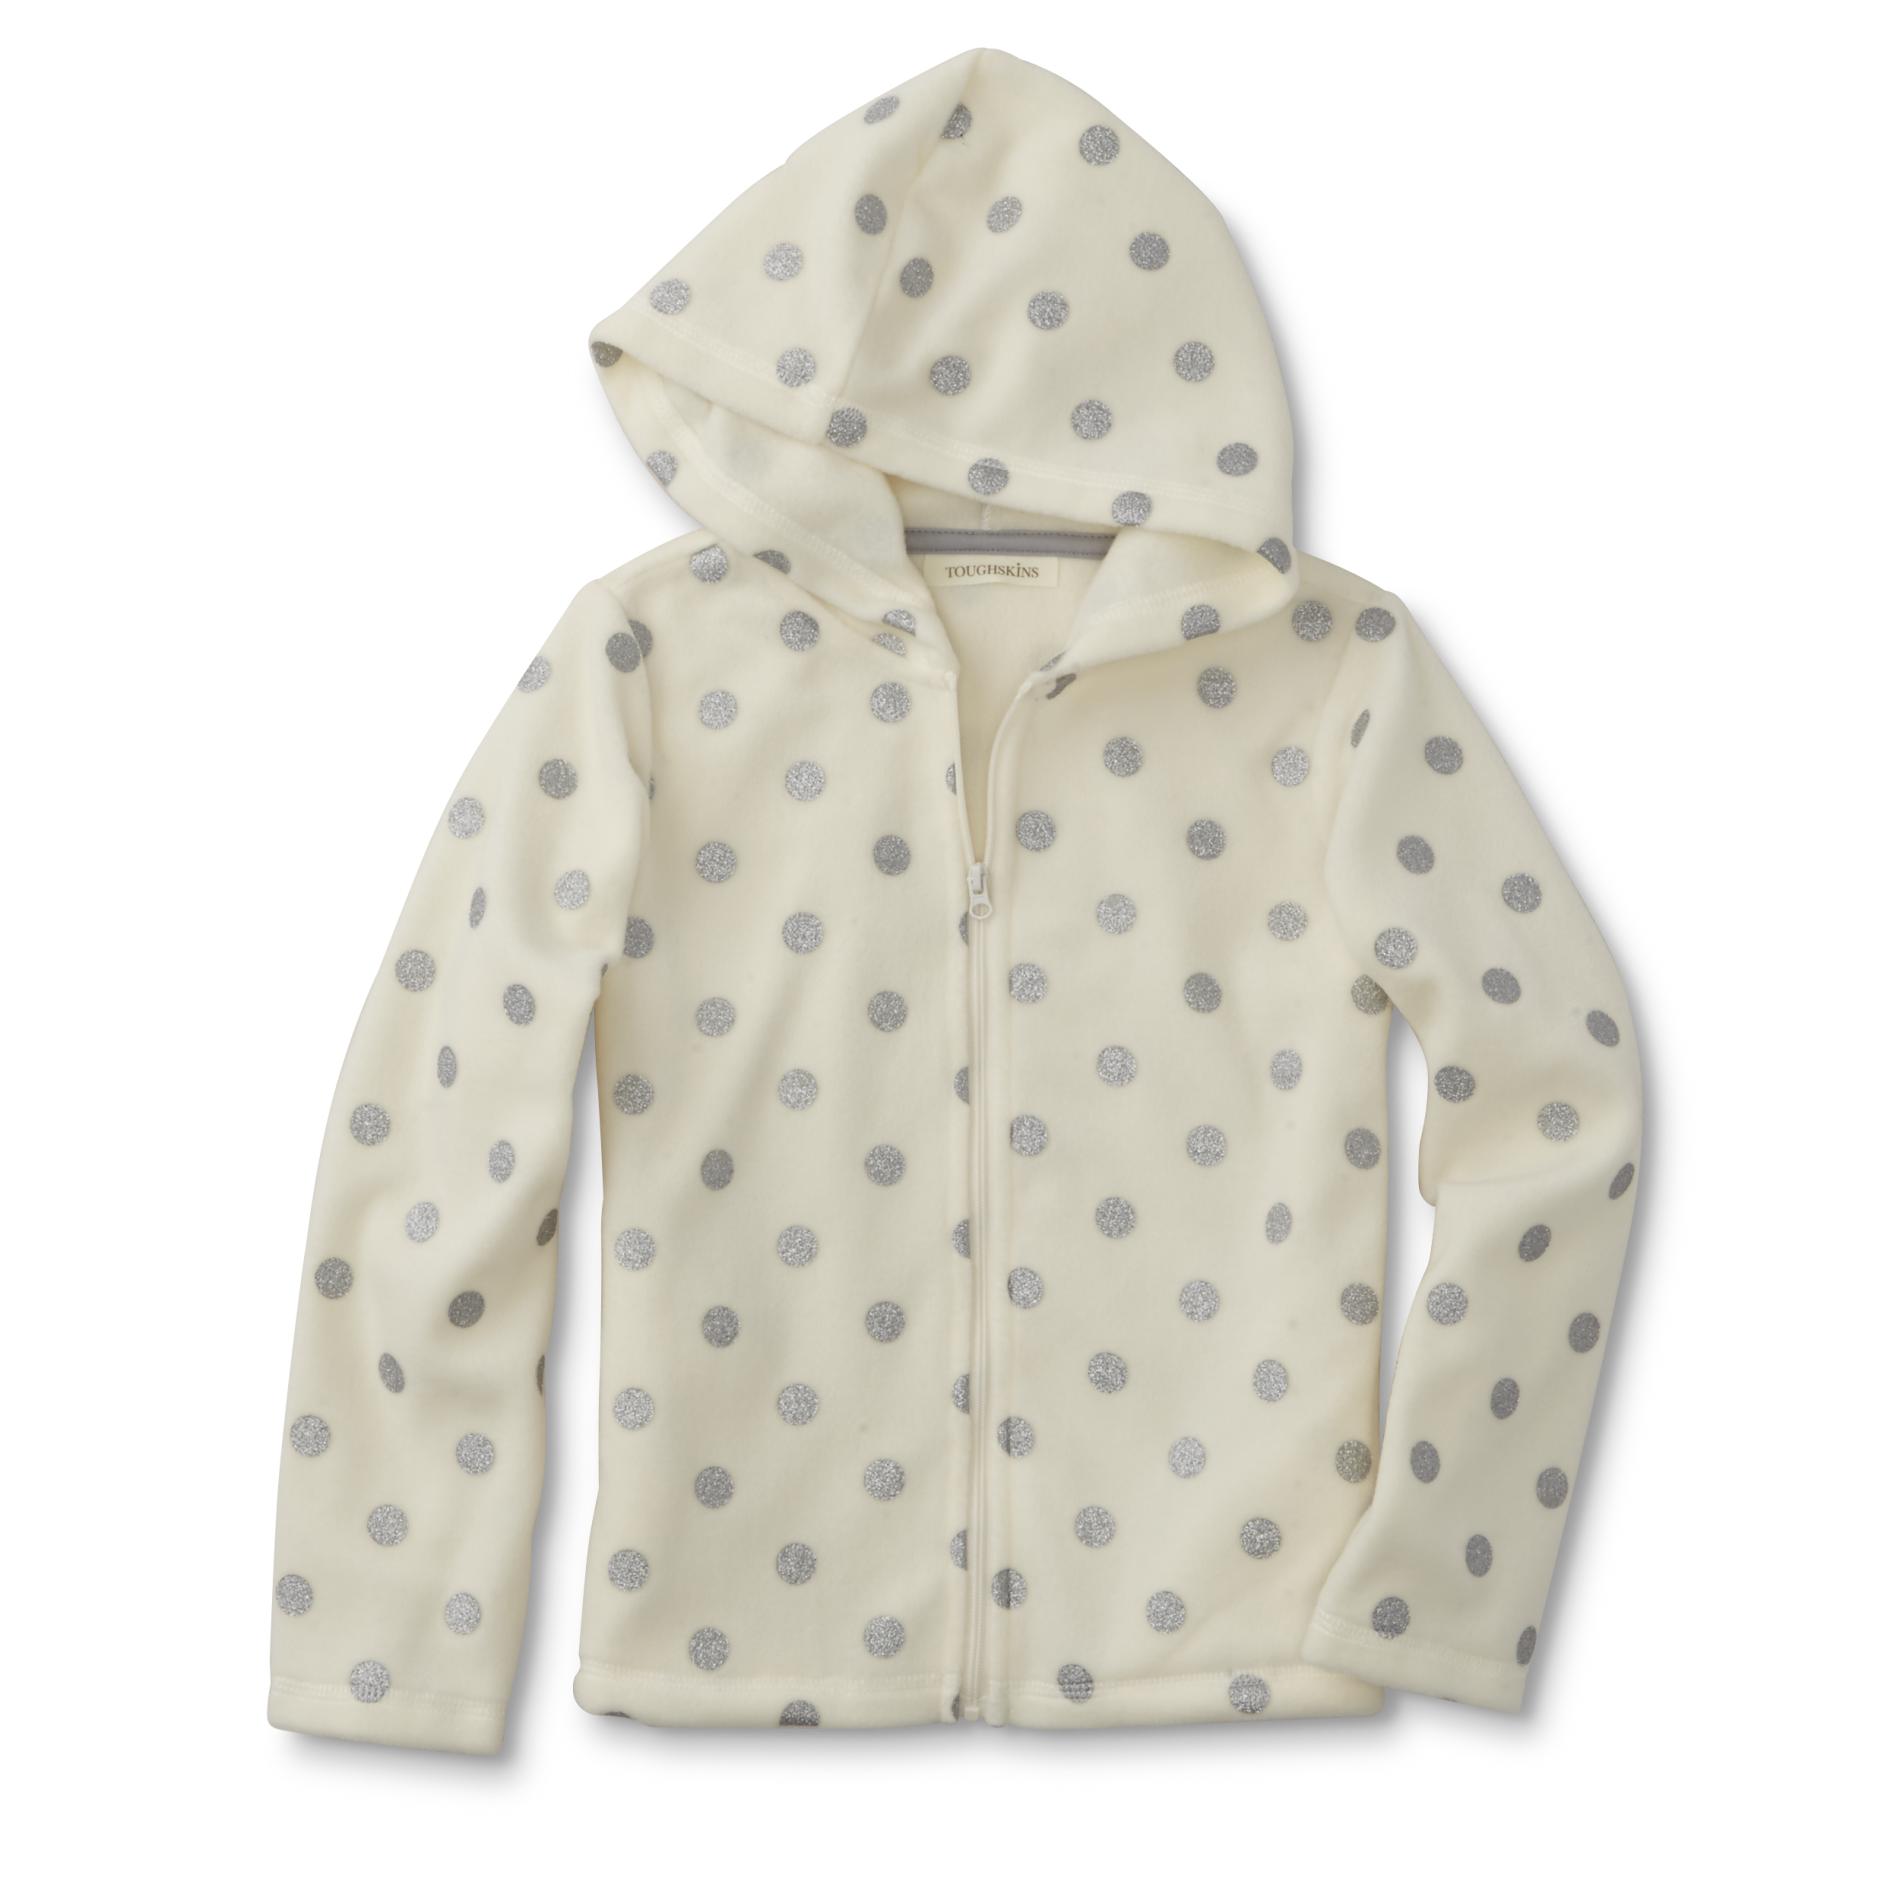 Toughskins Infant & Toddler Girls' Fleece Hoodie Jacket - Glitter Dots